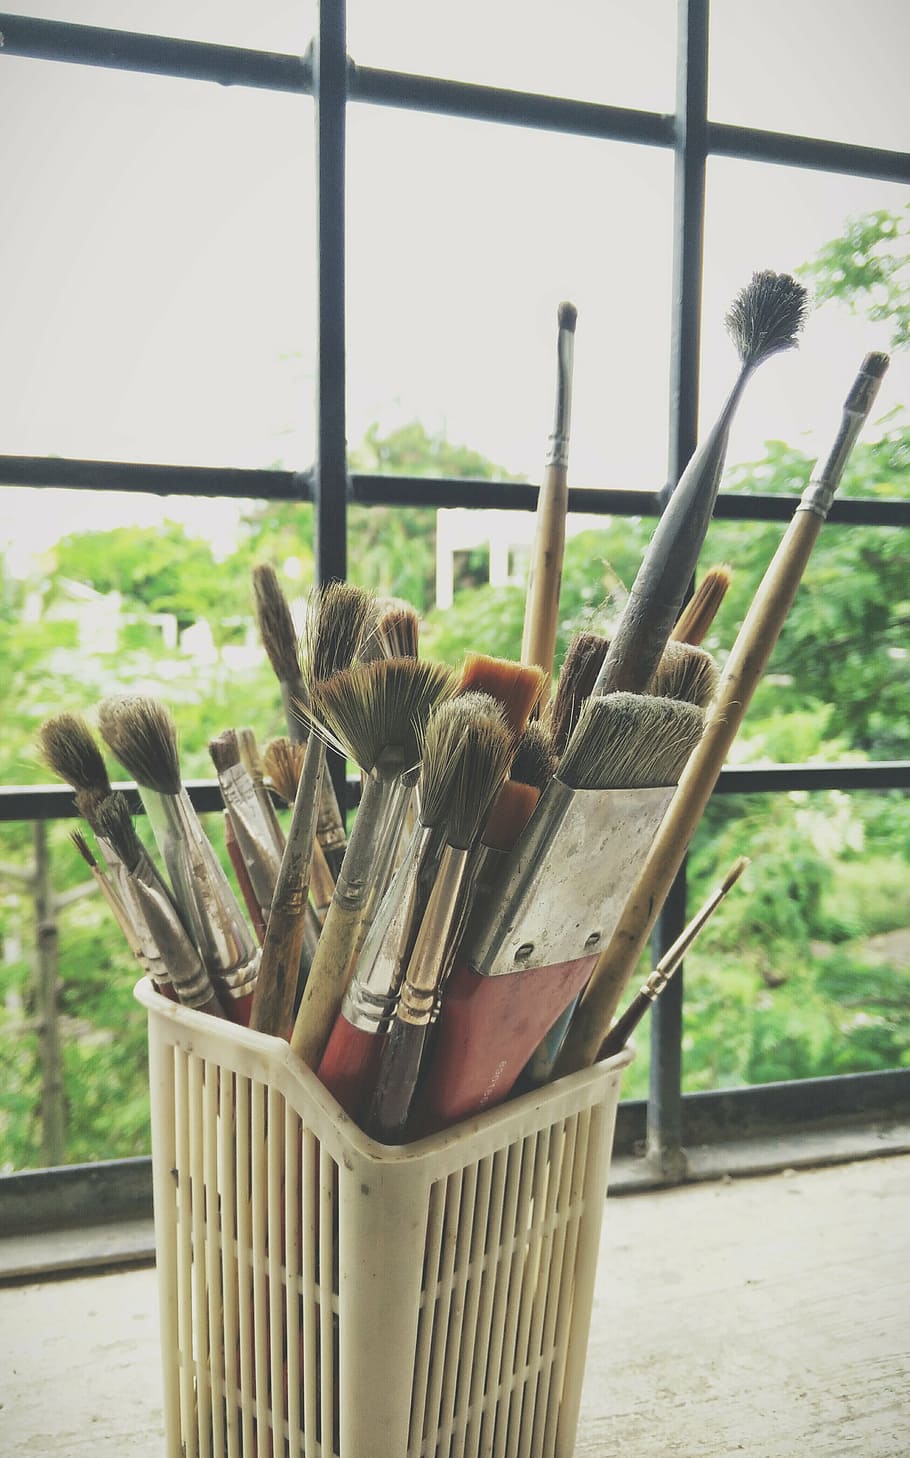 assorted-color paintbrush, inside, white, plastic basket, life, beauty, scene, artist, painter, art